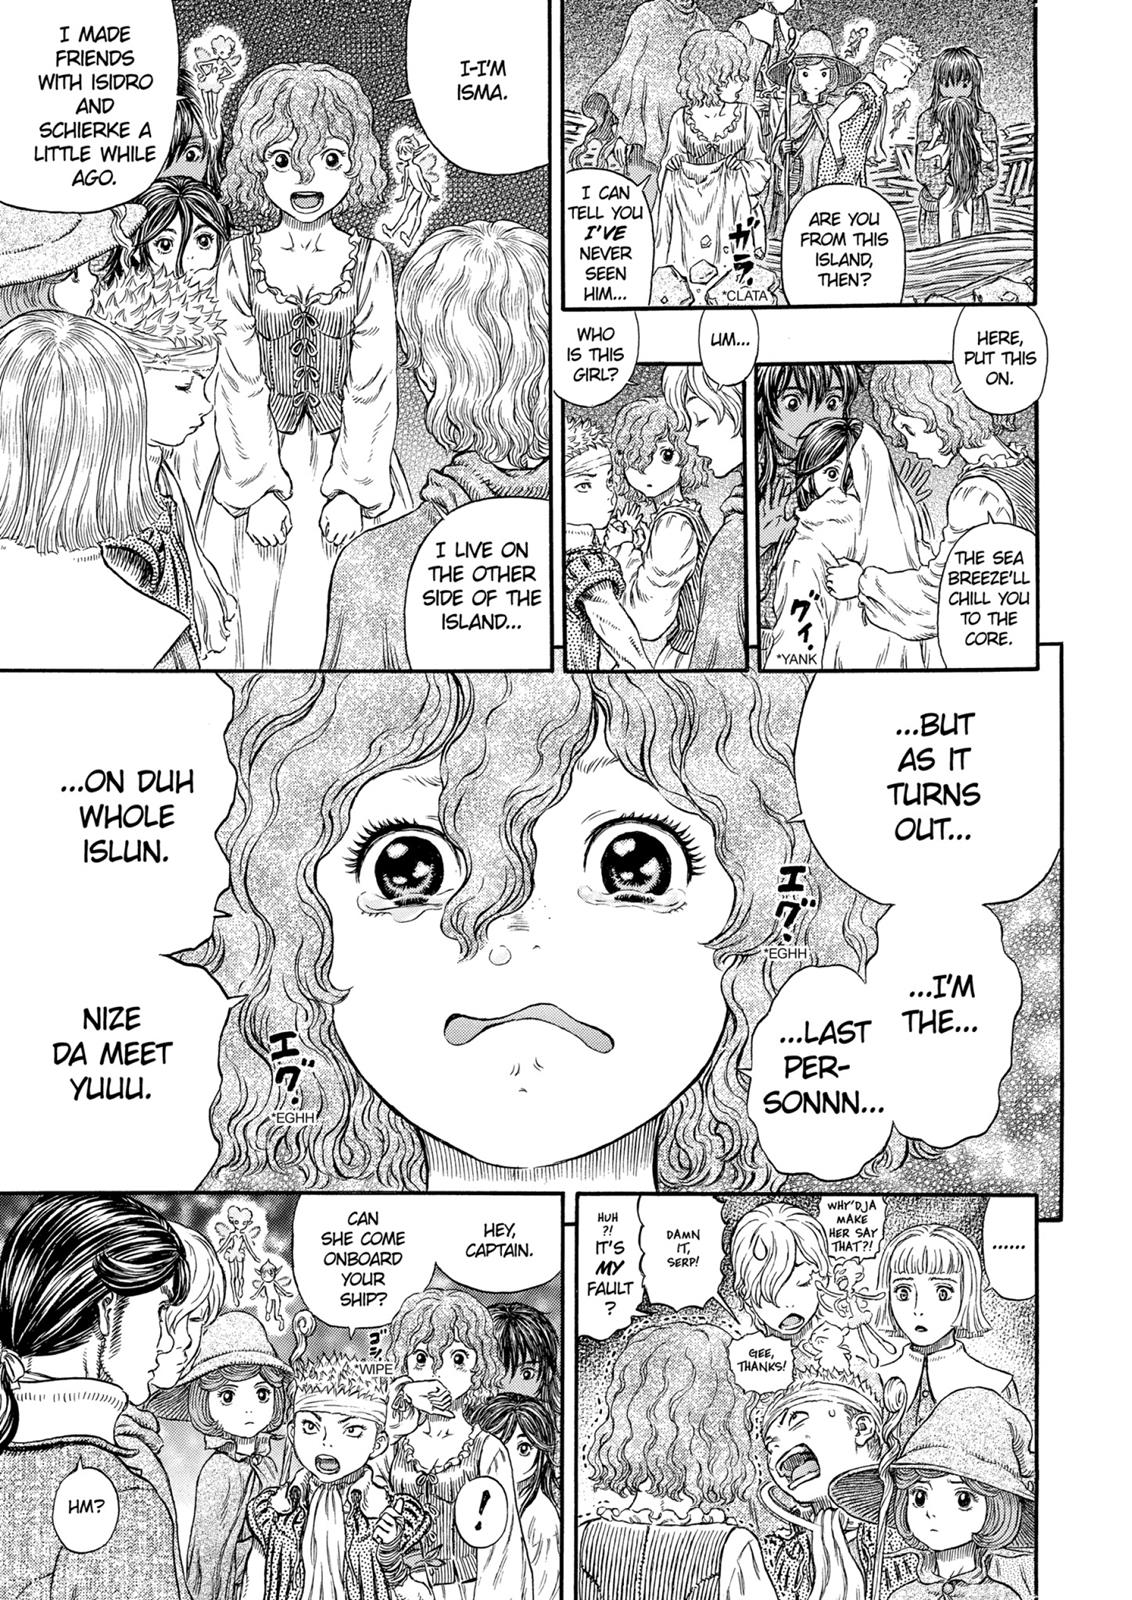 Berserk Manga Chapter 317 image 14